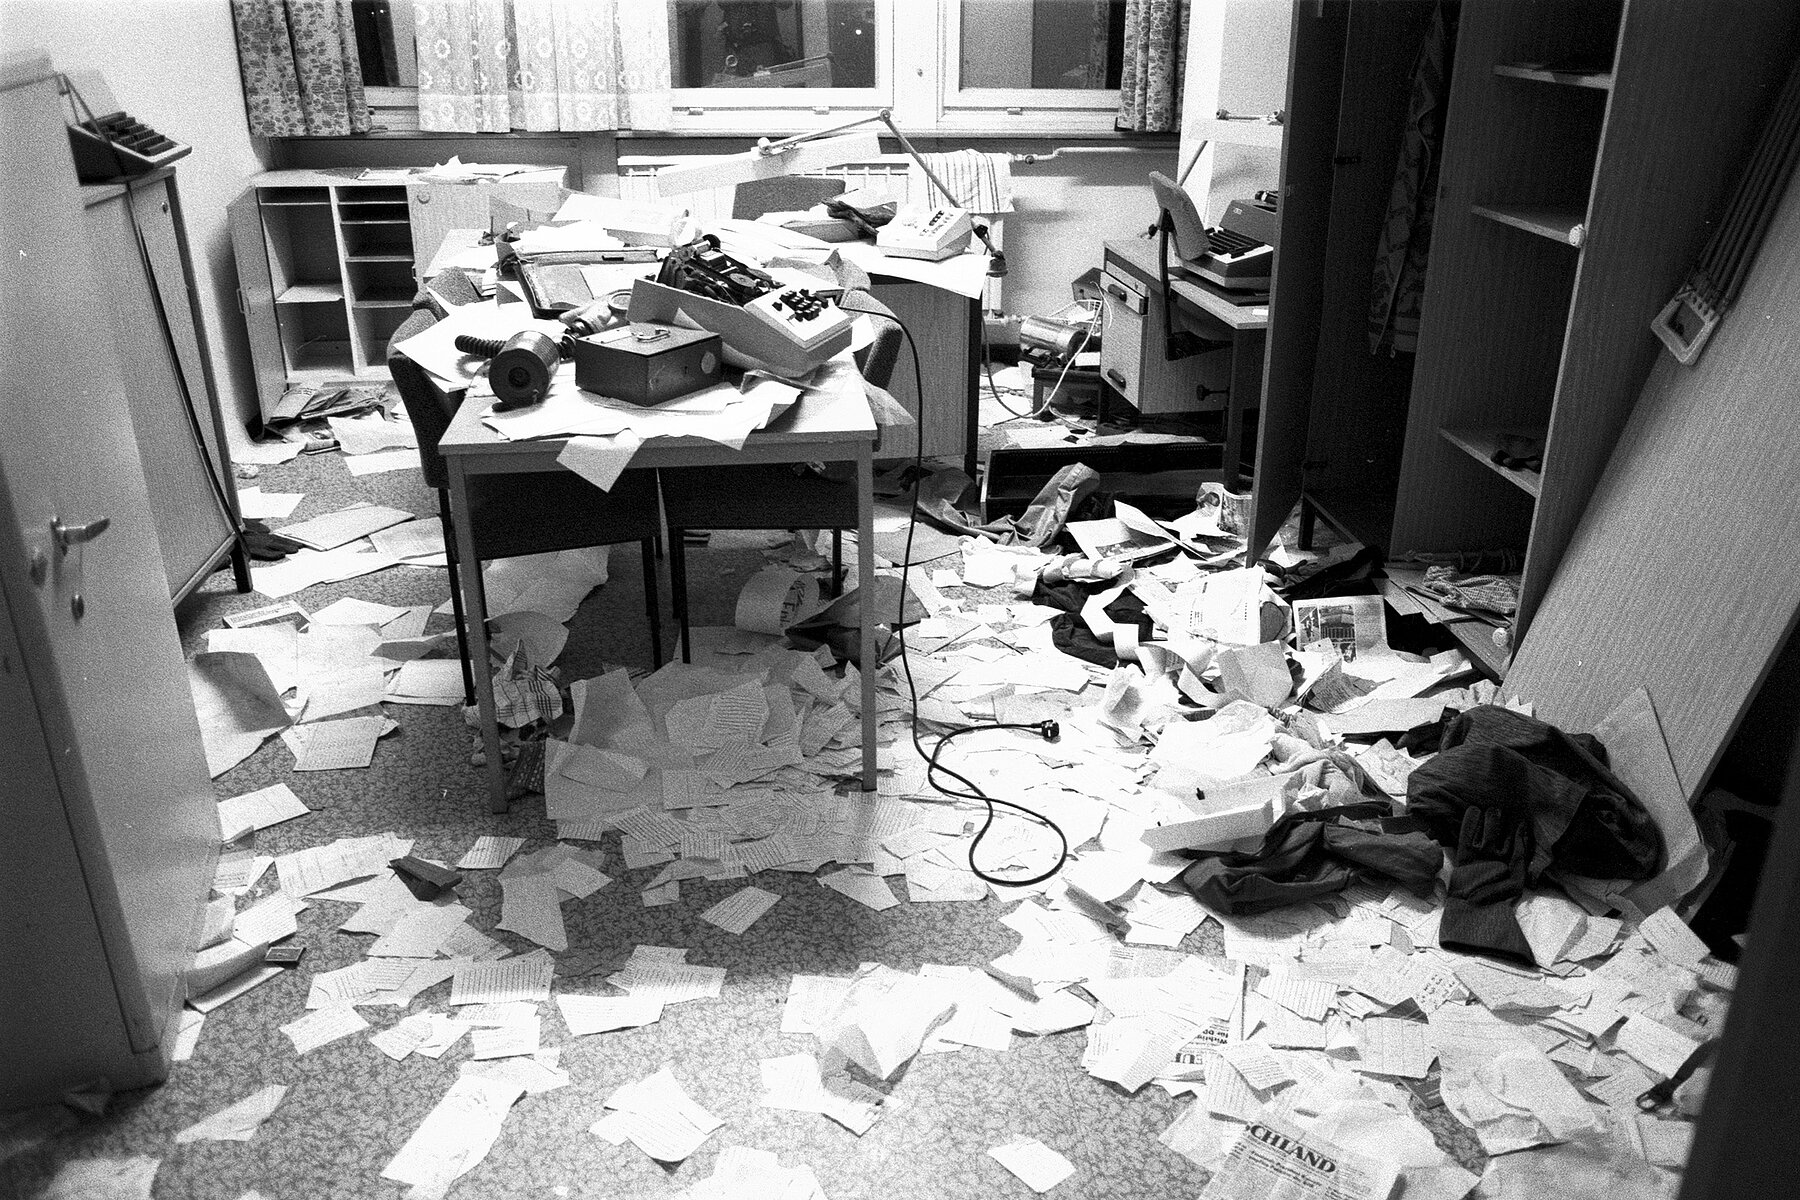 Ein verwüstetes Büro mit Papier auf dem Boden, geöffneten Schränken und diversen Schreibgeräten auf Tischen. 